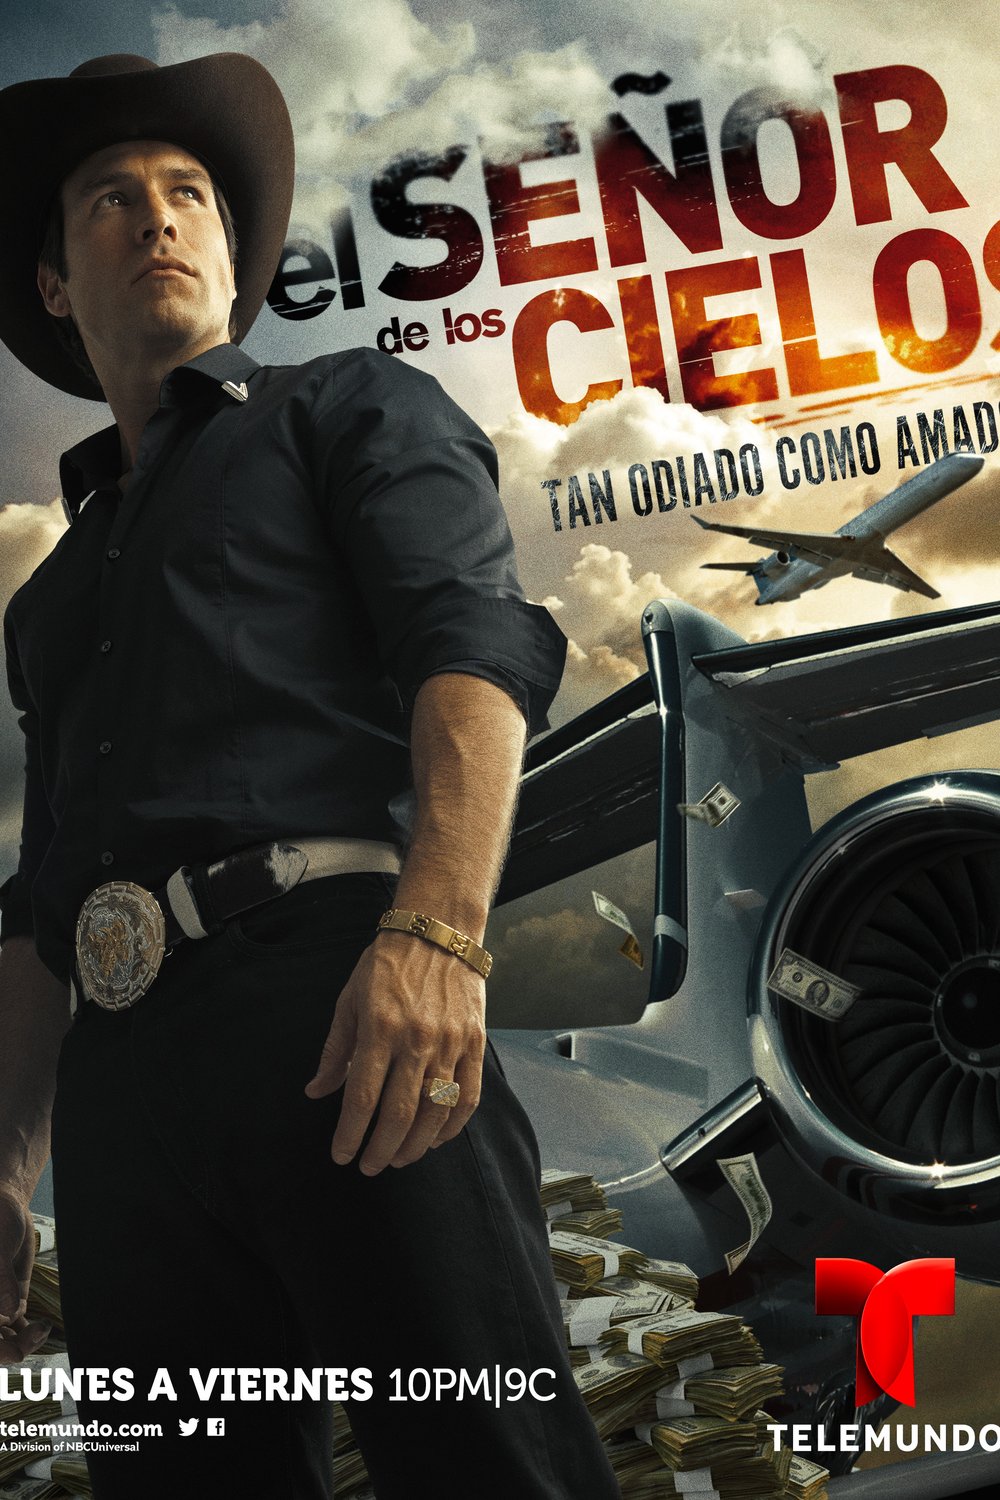 Spanish poster of the movie El Señor de los Cielos